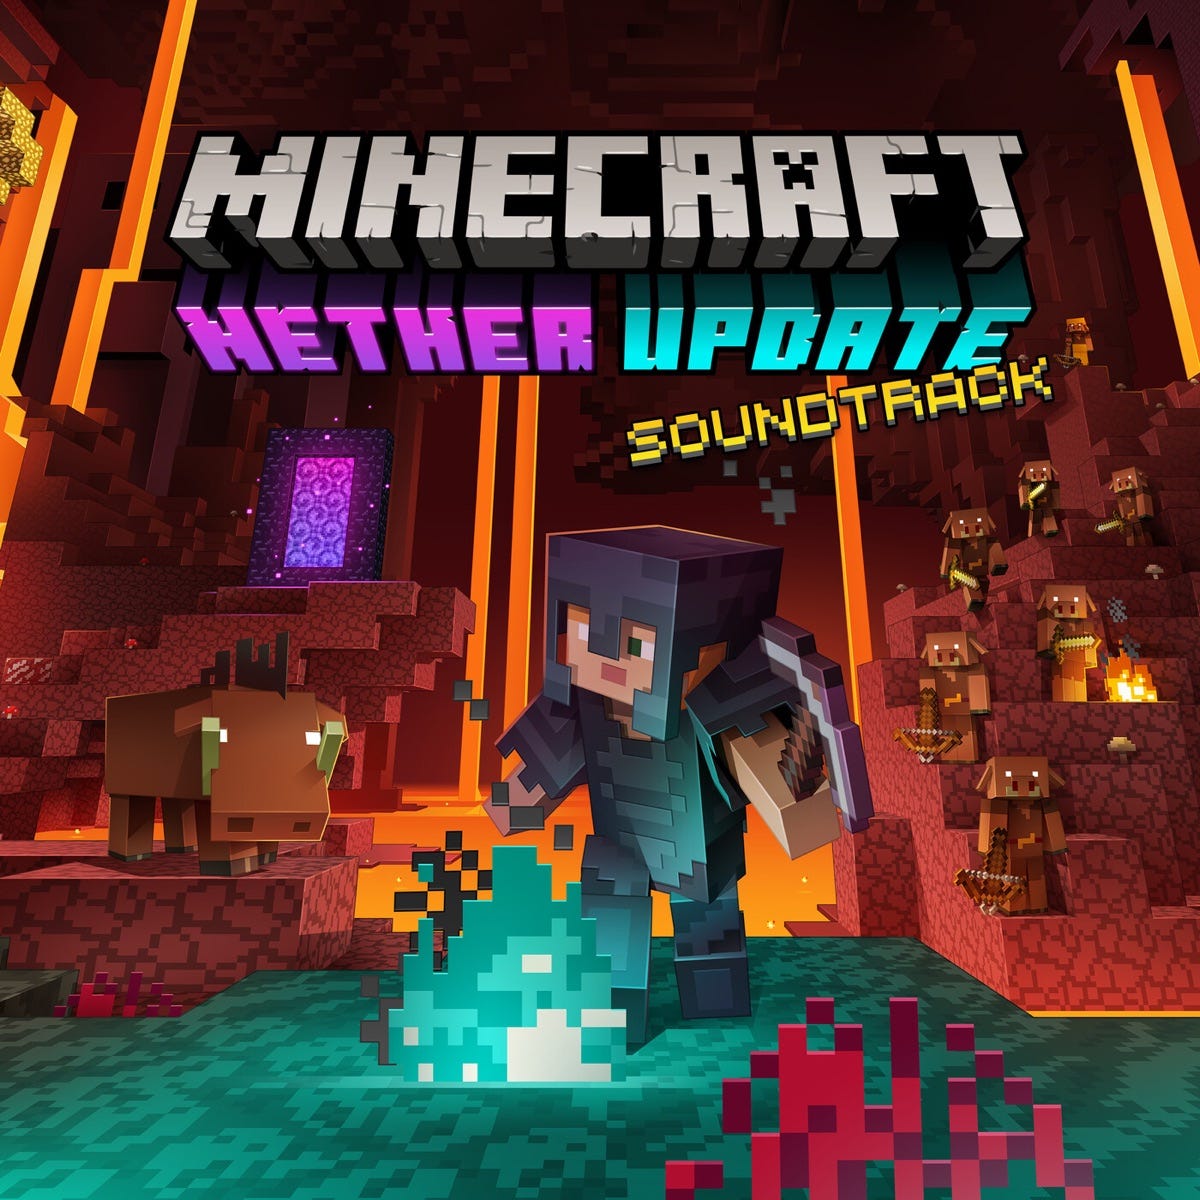 Minecraft 1.16 Nether Update Build